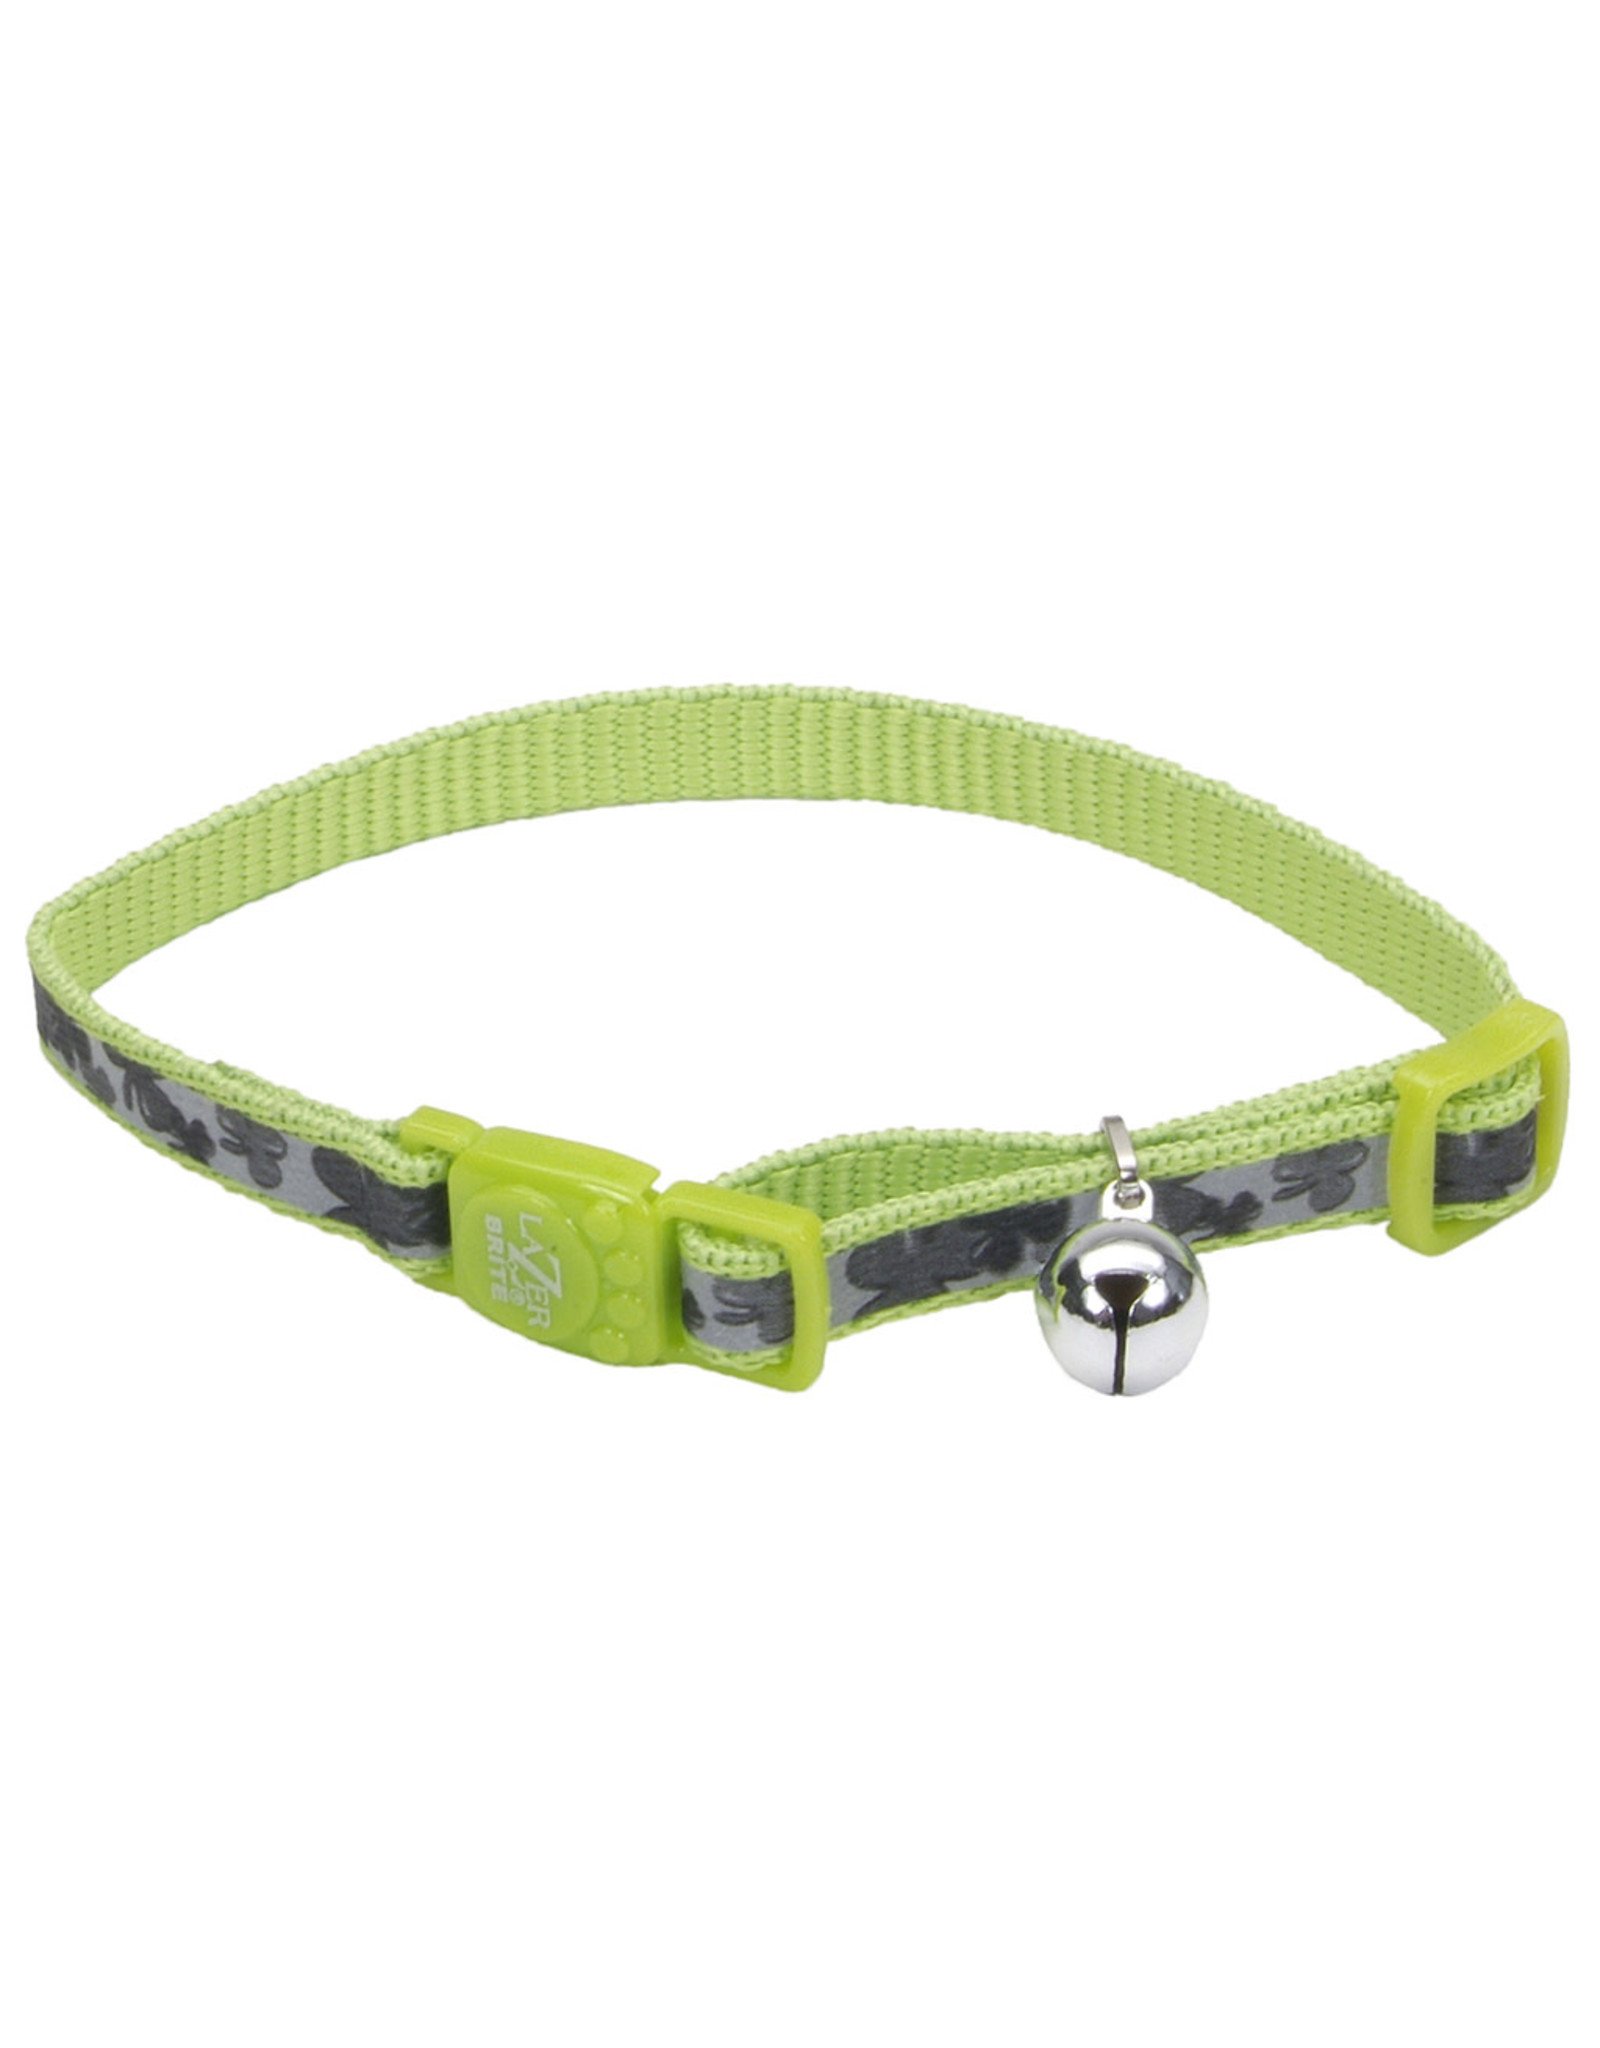 Coastal Pet Products Lazerbrite Breakaway Collar 8-12” x 3/8”